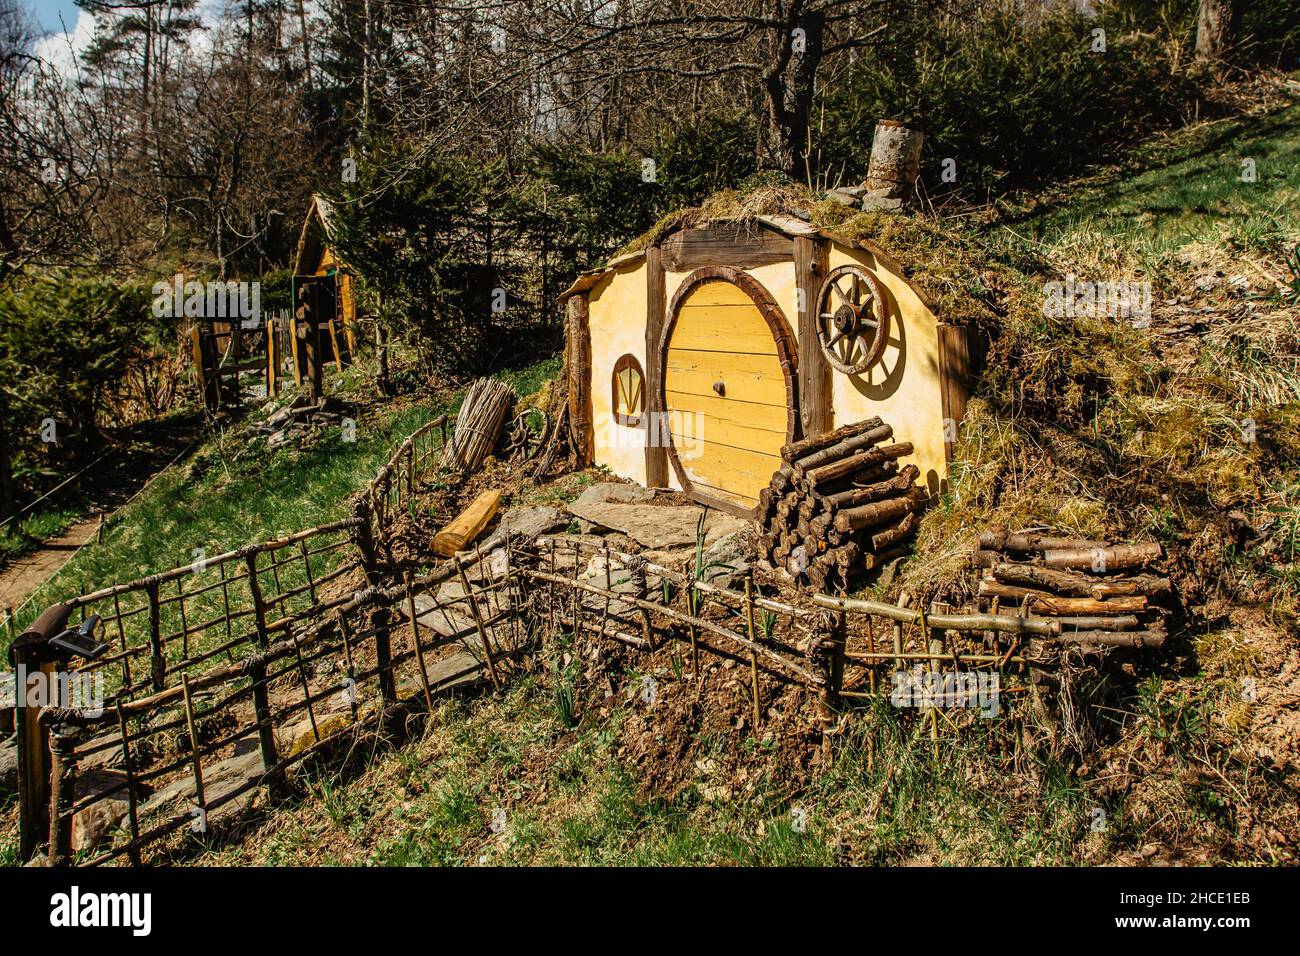 Hobbit casa in ceco Hobbiton con tre buche Hobbit e cute yellow doors.Fairy racconto casa in Garden.Magic piccolo villaggio da film fantasy Foto Stock